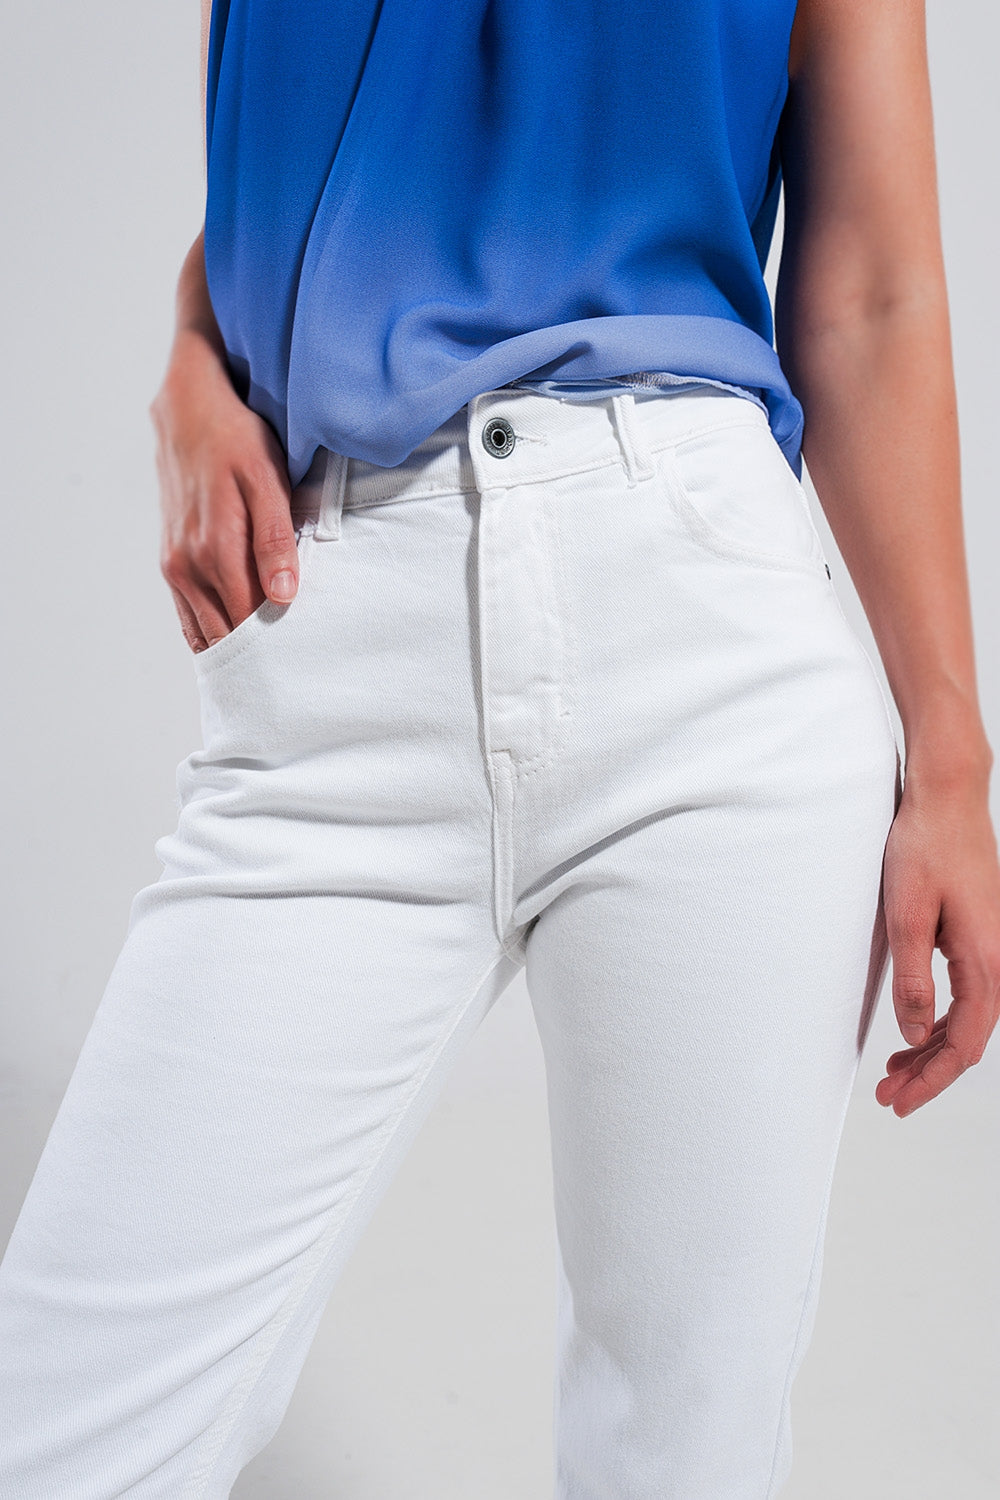 Jeans skinny in cotone elasticizzato bianco